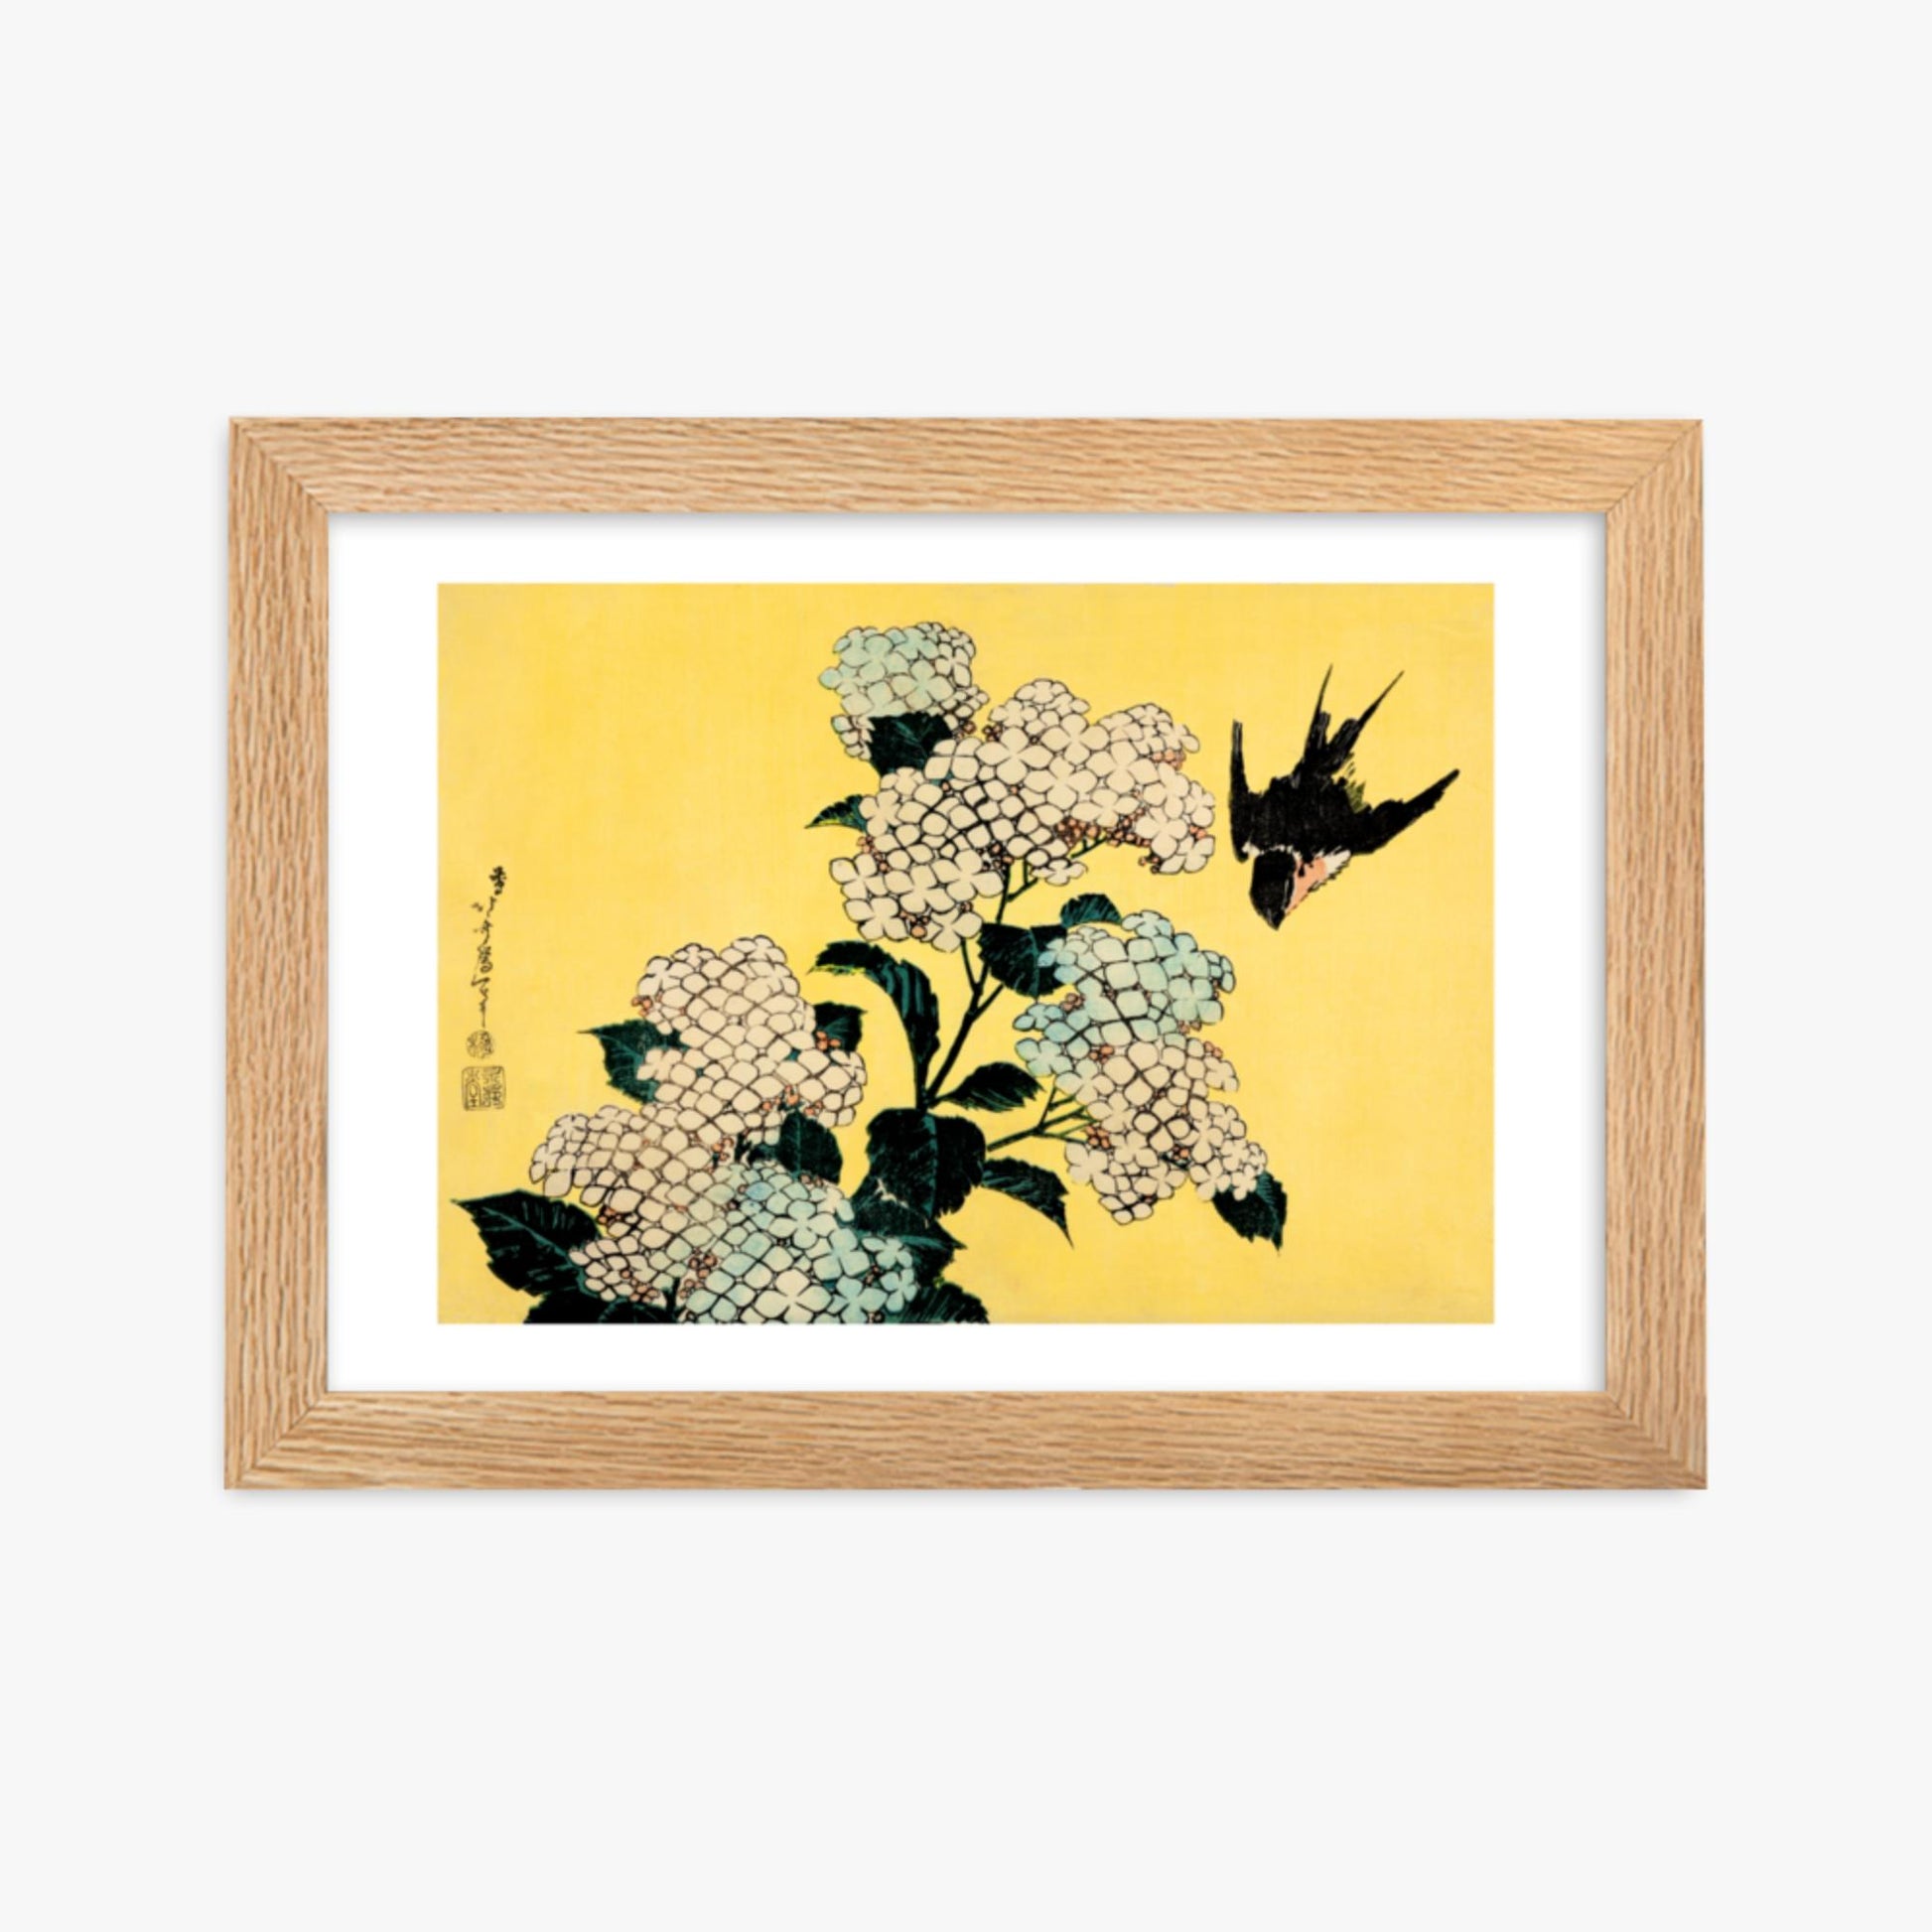 Katsushika Hokusai - Hydrangea and Swallow 21x30 cm Poster With Oak Frame